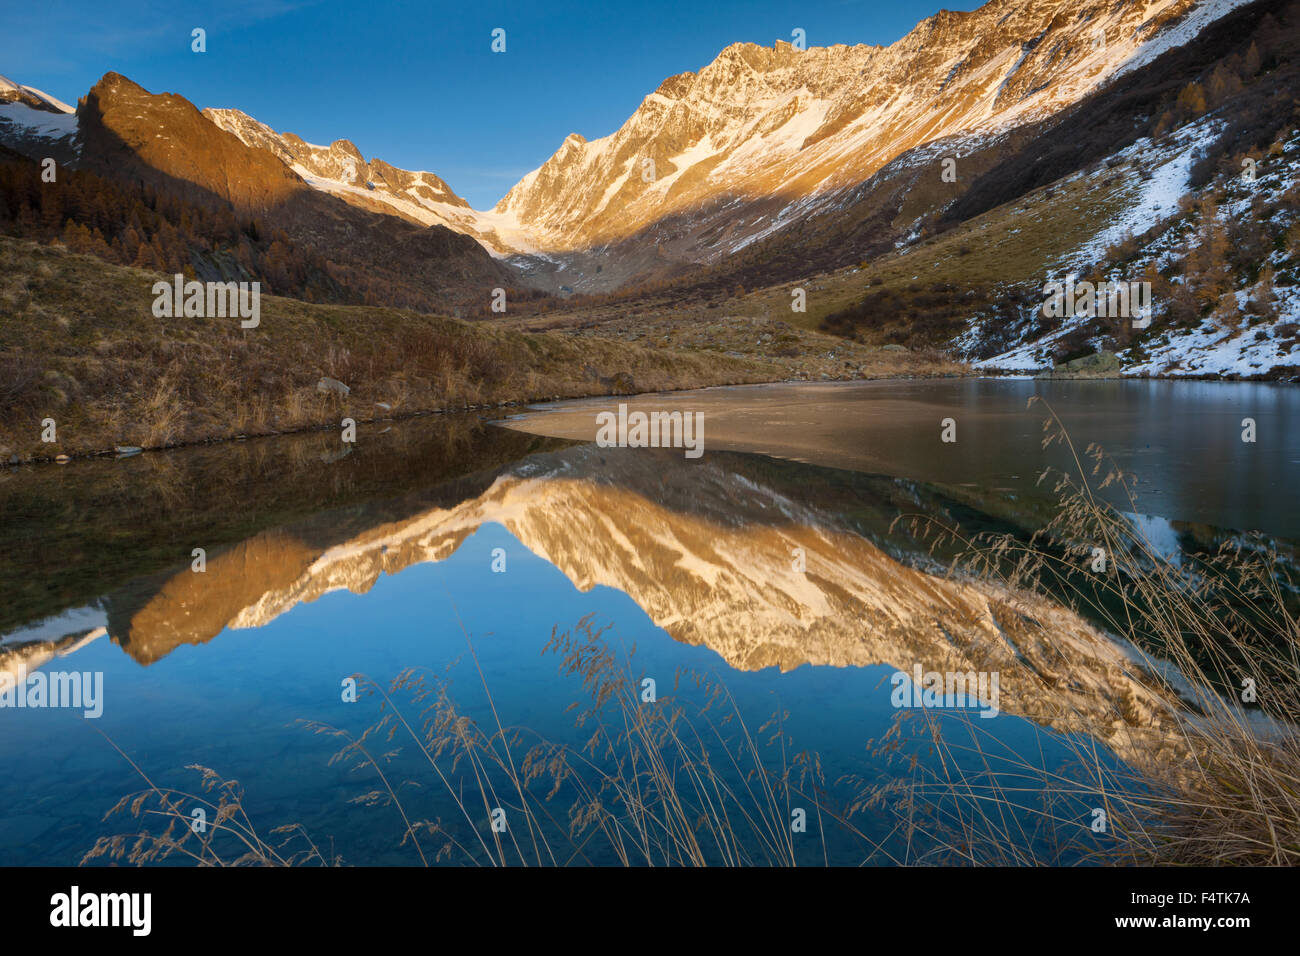 Lago di base, Svizzera canton Vallese, Lötschental, lago di montagna, lago, riflessione, autunno Foto Stock